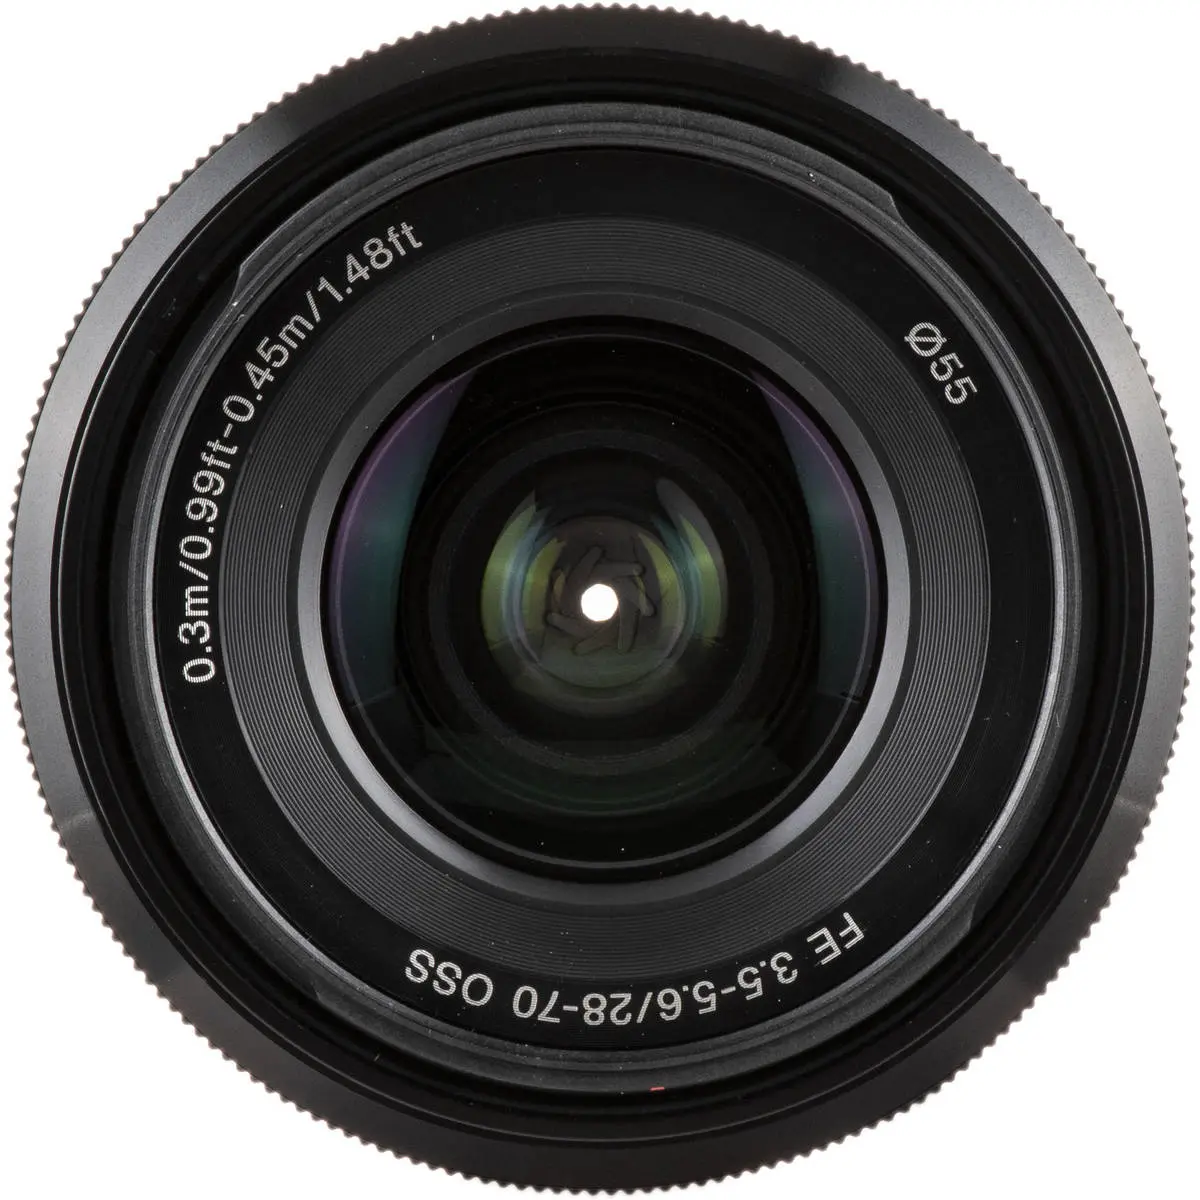 Sony FE 28-70mm F3.5-5.6 OSS SEL2870 E-Mount Full Frame Lens